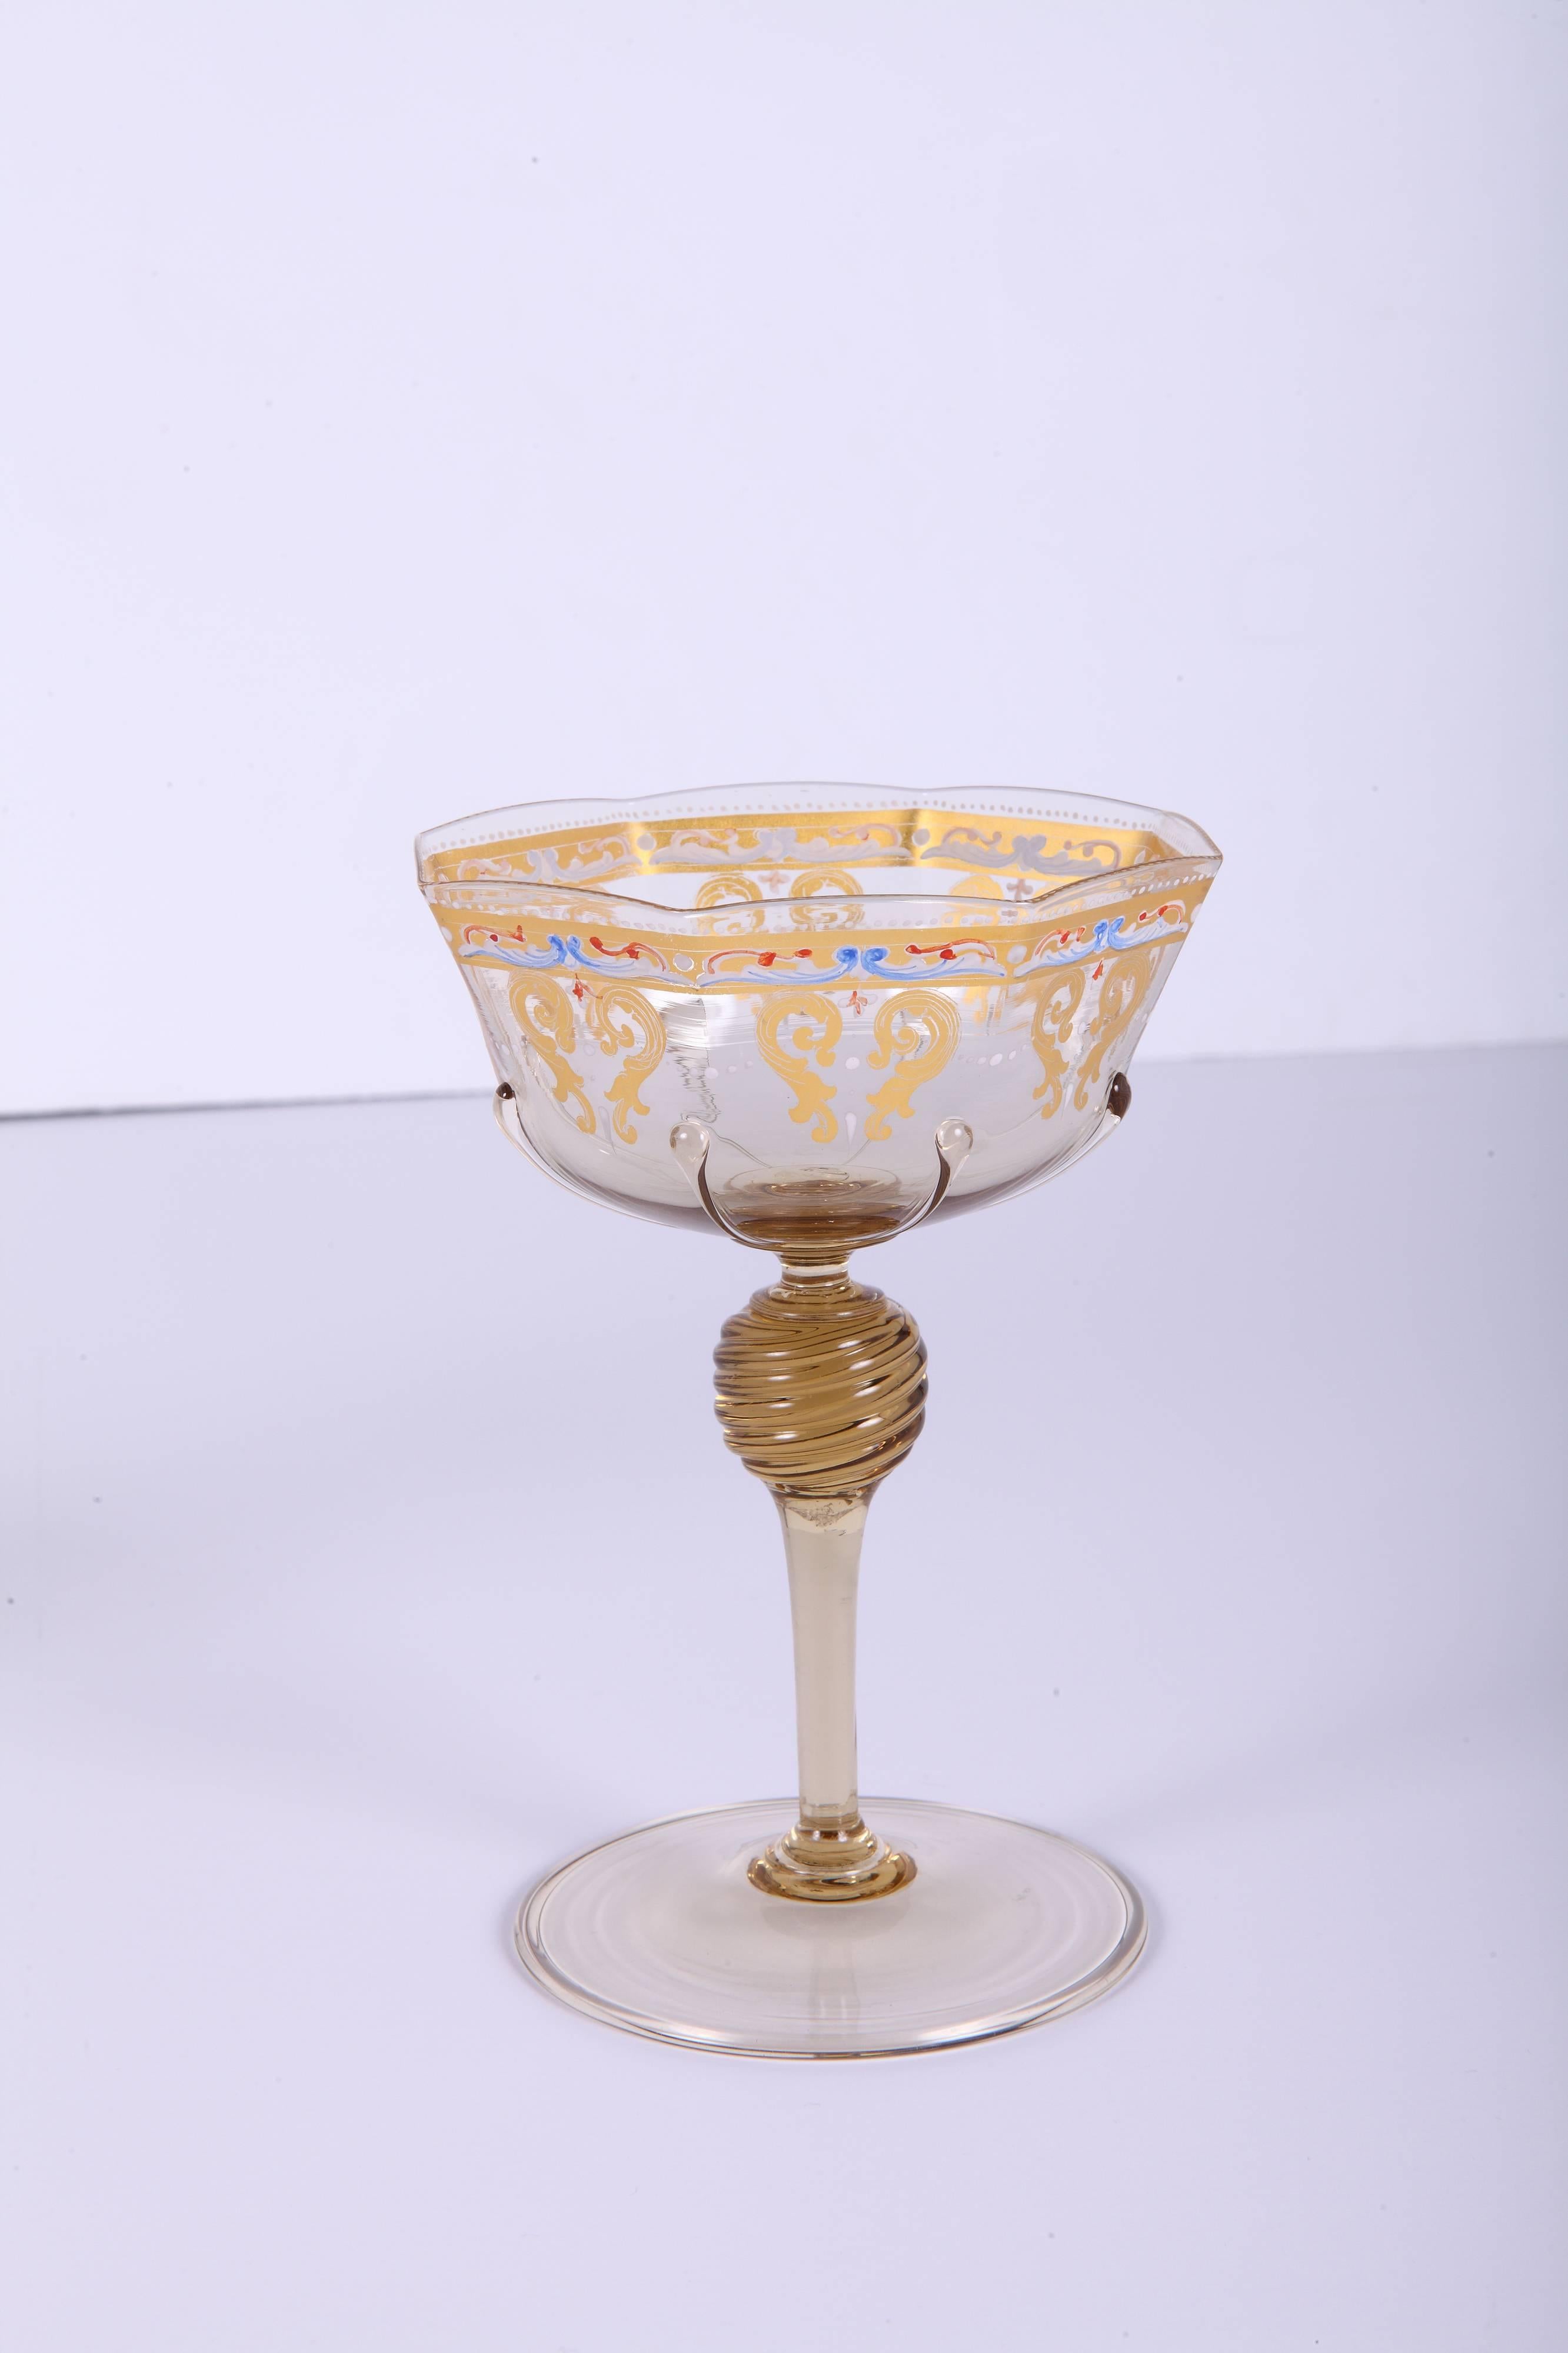 Königliches 55-teiliges Stiel- und Dessertservice aus vergoldetem und emailliertem Muranoglas, bestehend aus (13) achteckigen Wein- oder Wassergläsern, (14) achteckigen Champagnergläsern, (14) runden Desserttellern und (14) achteckigen Dessert- oder